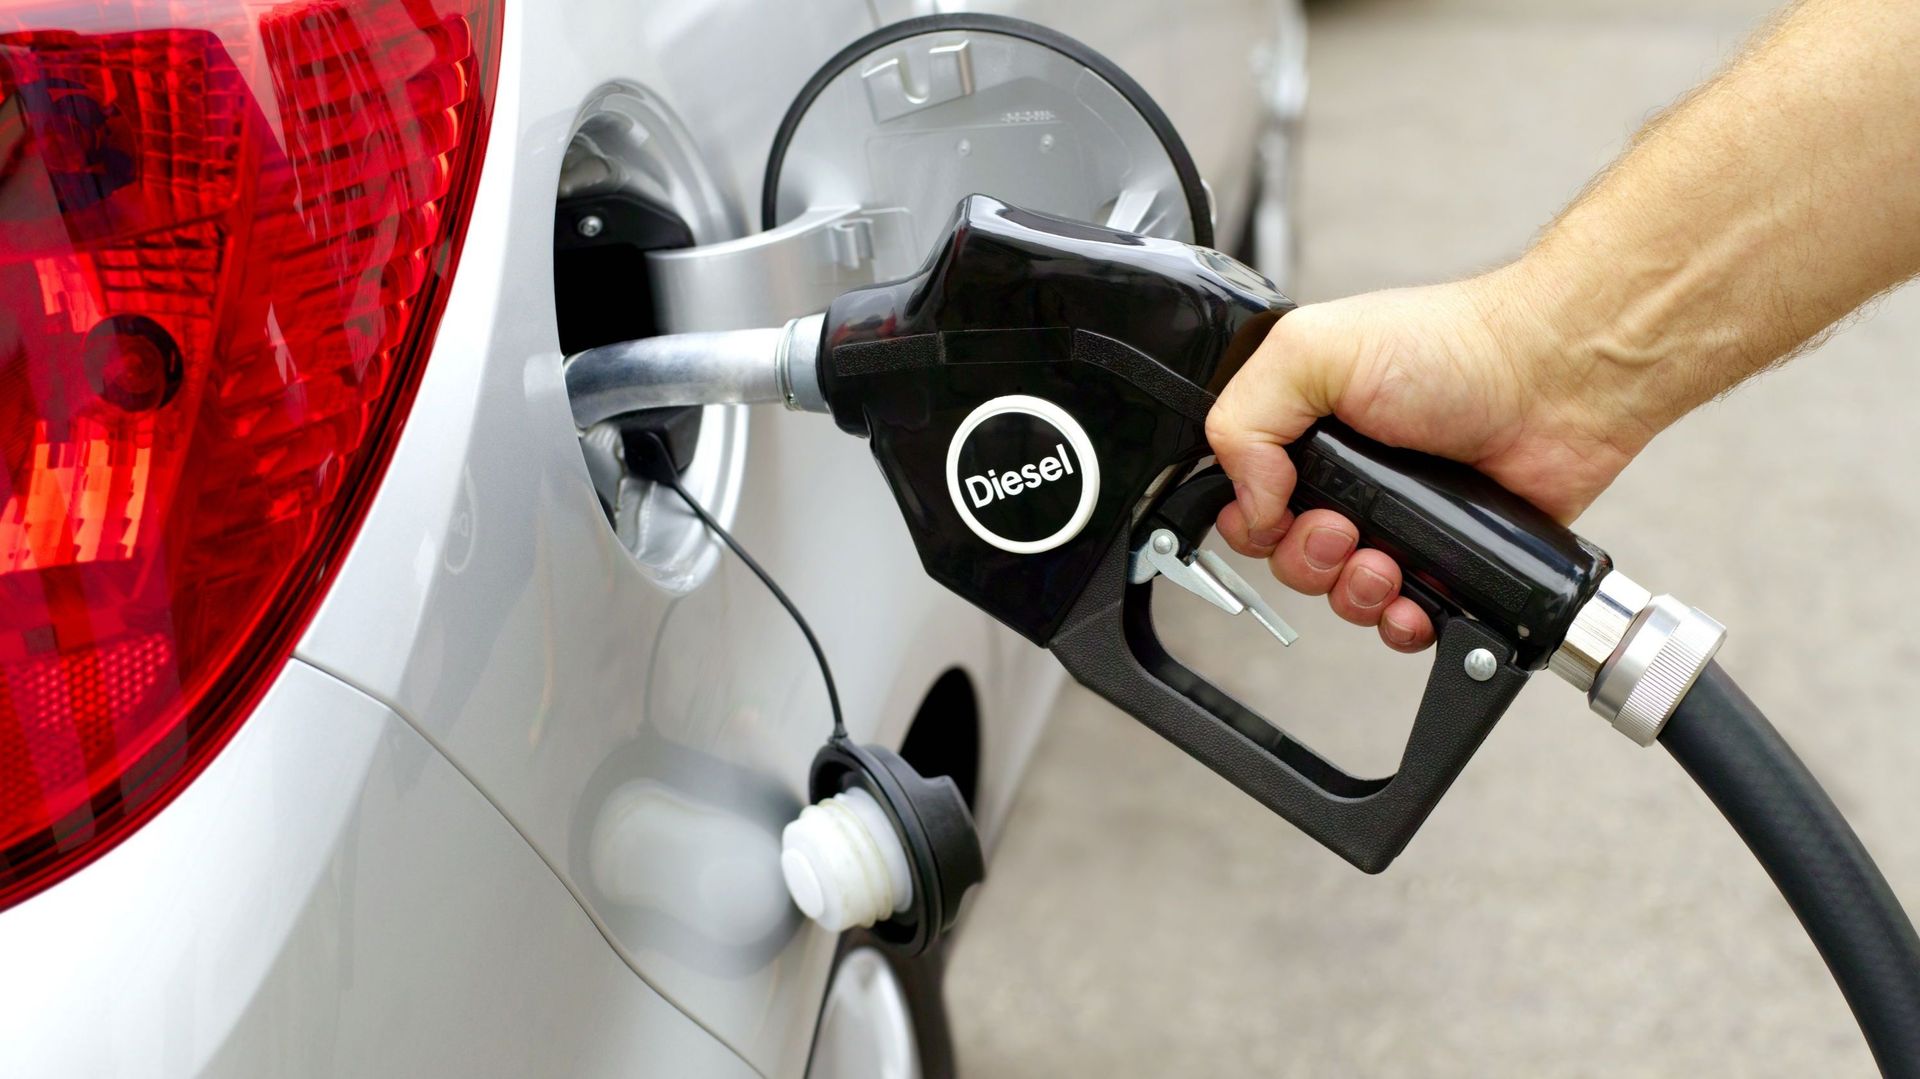 Les prix de l'essence et du diesel baissent pour la première fois depuis des semaines